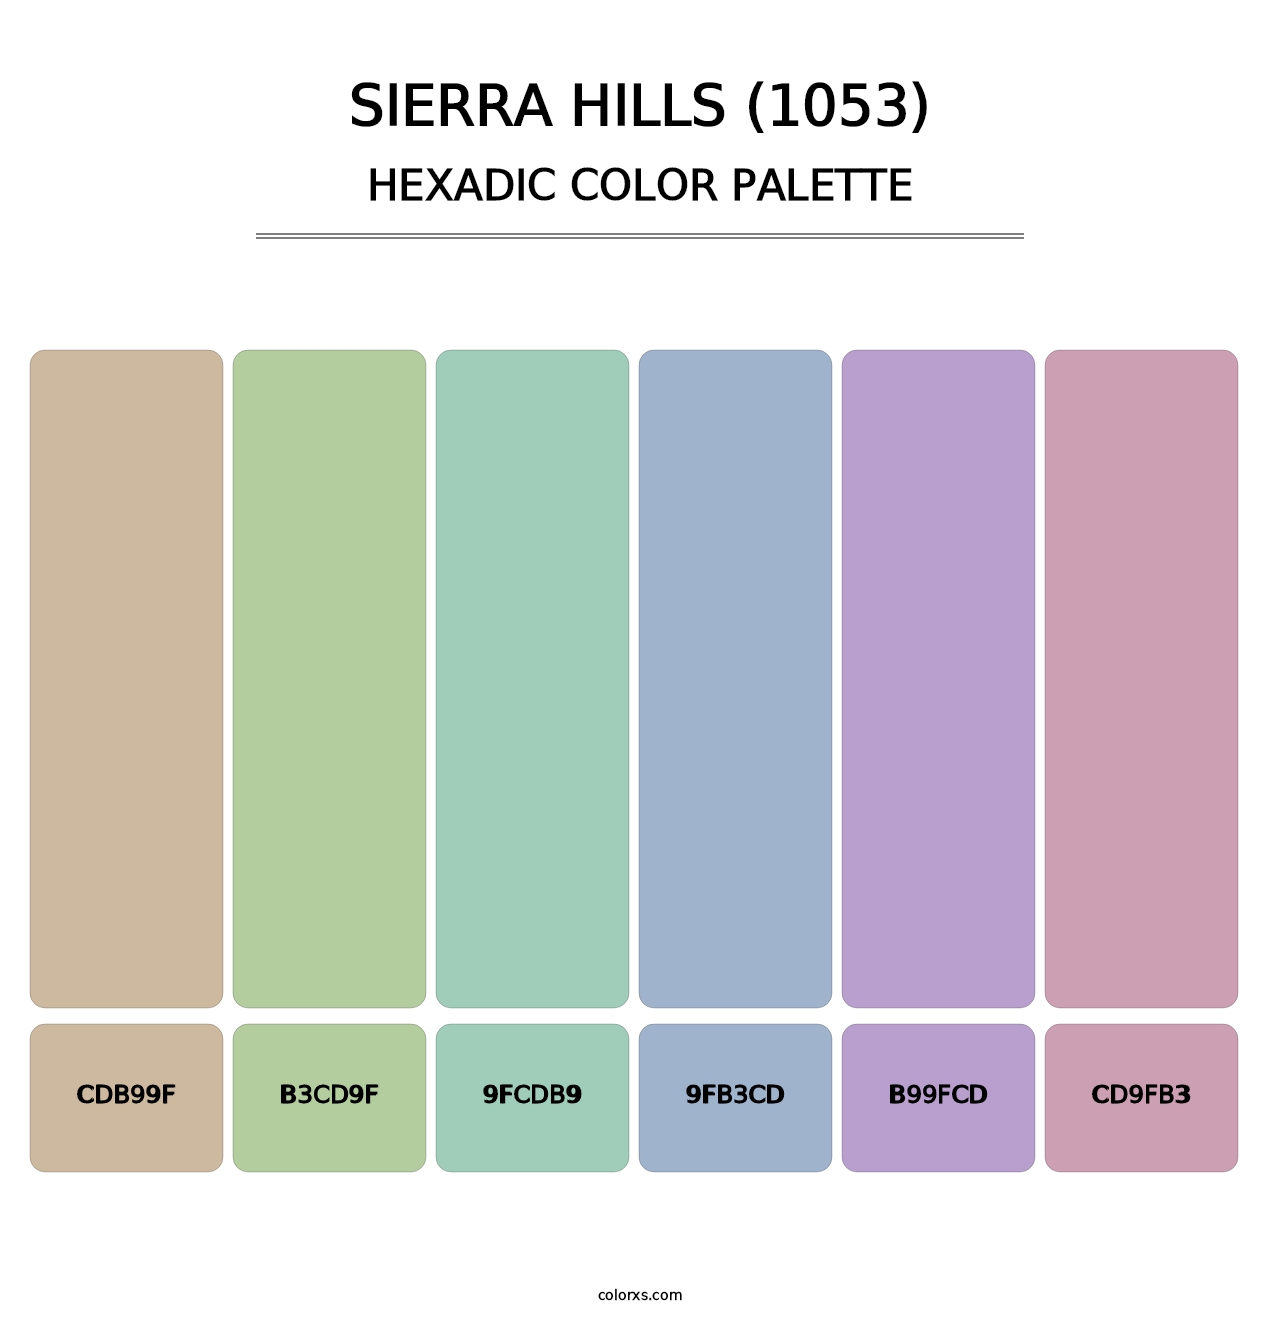 Sierra Hills (1053) - Hexadic Color Palette